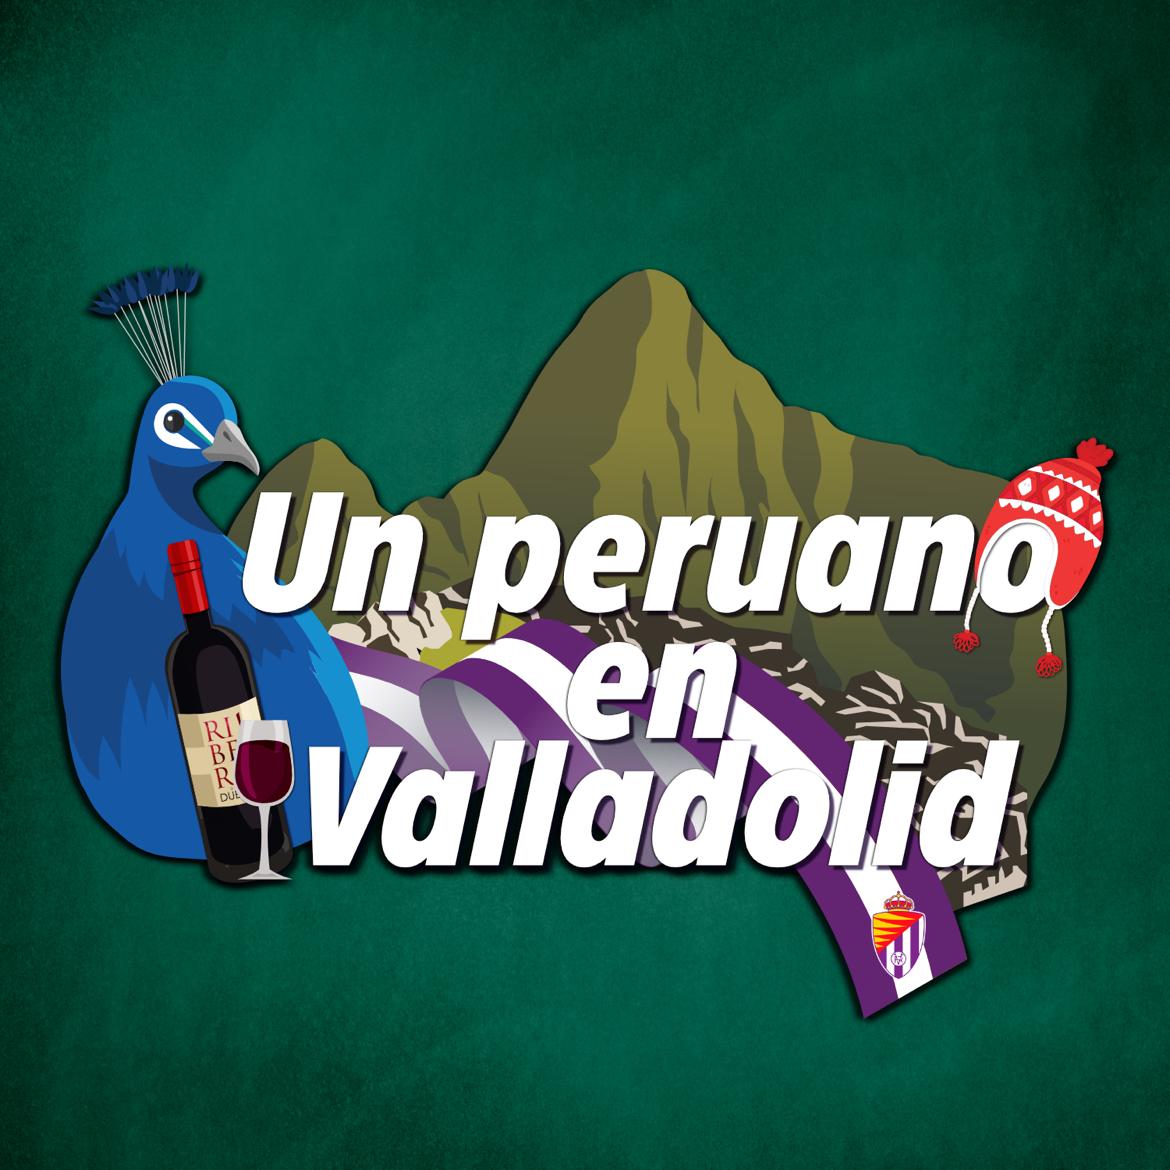 Perú Valladolid's images